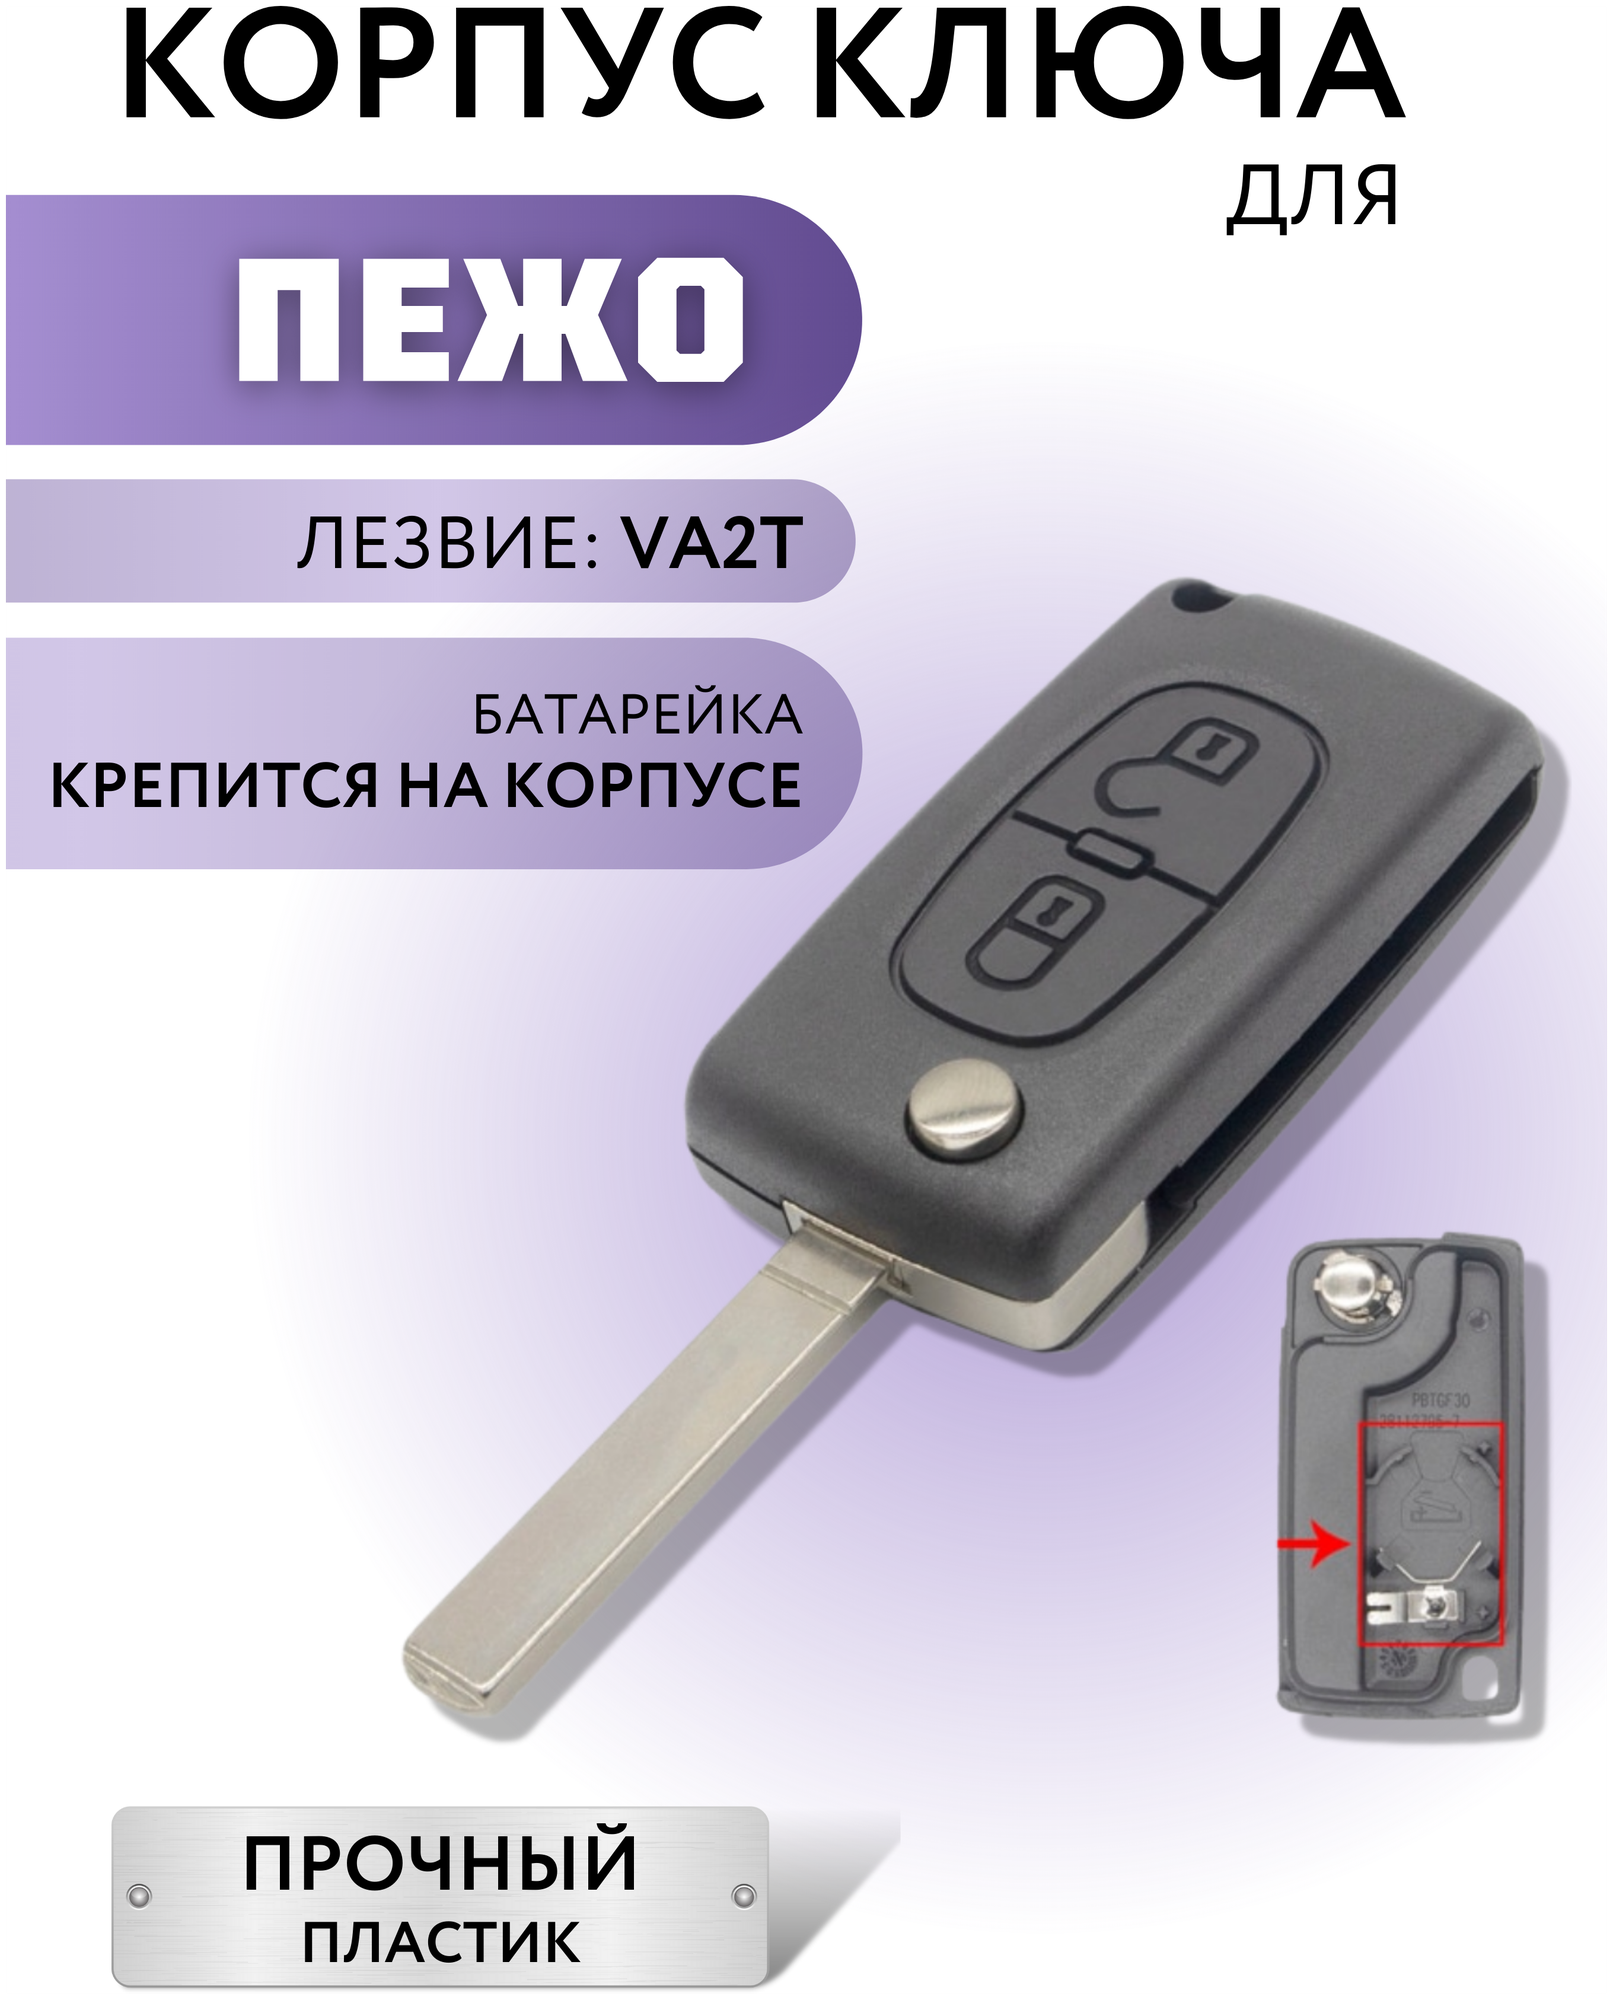 Корпус ключа зажигания для Пежо корпус ключа для Peugeot 2 кнопки батарейка на корпусе лезвие VA2T